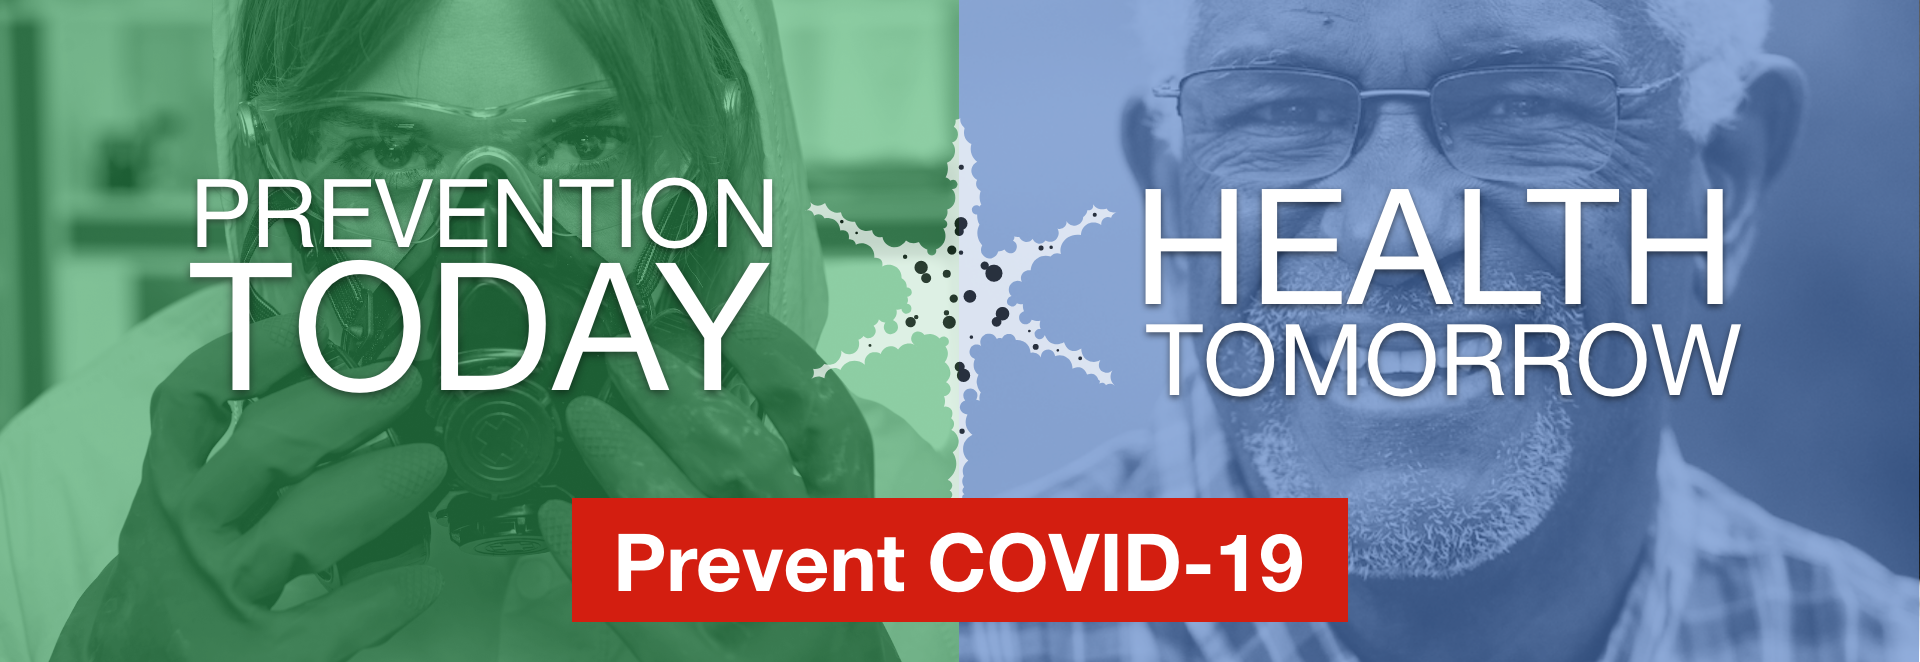 Prevent Today  |   Health Tomorrow | Prevent COVID-19